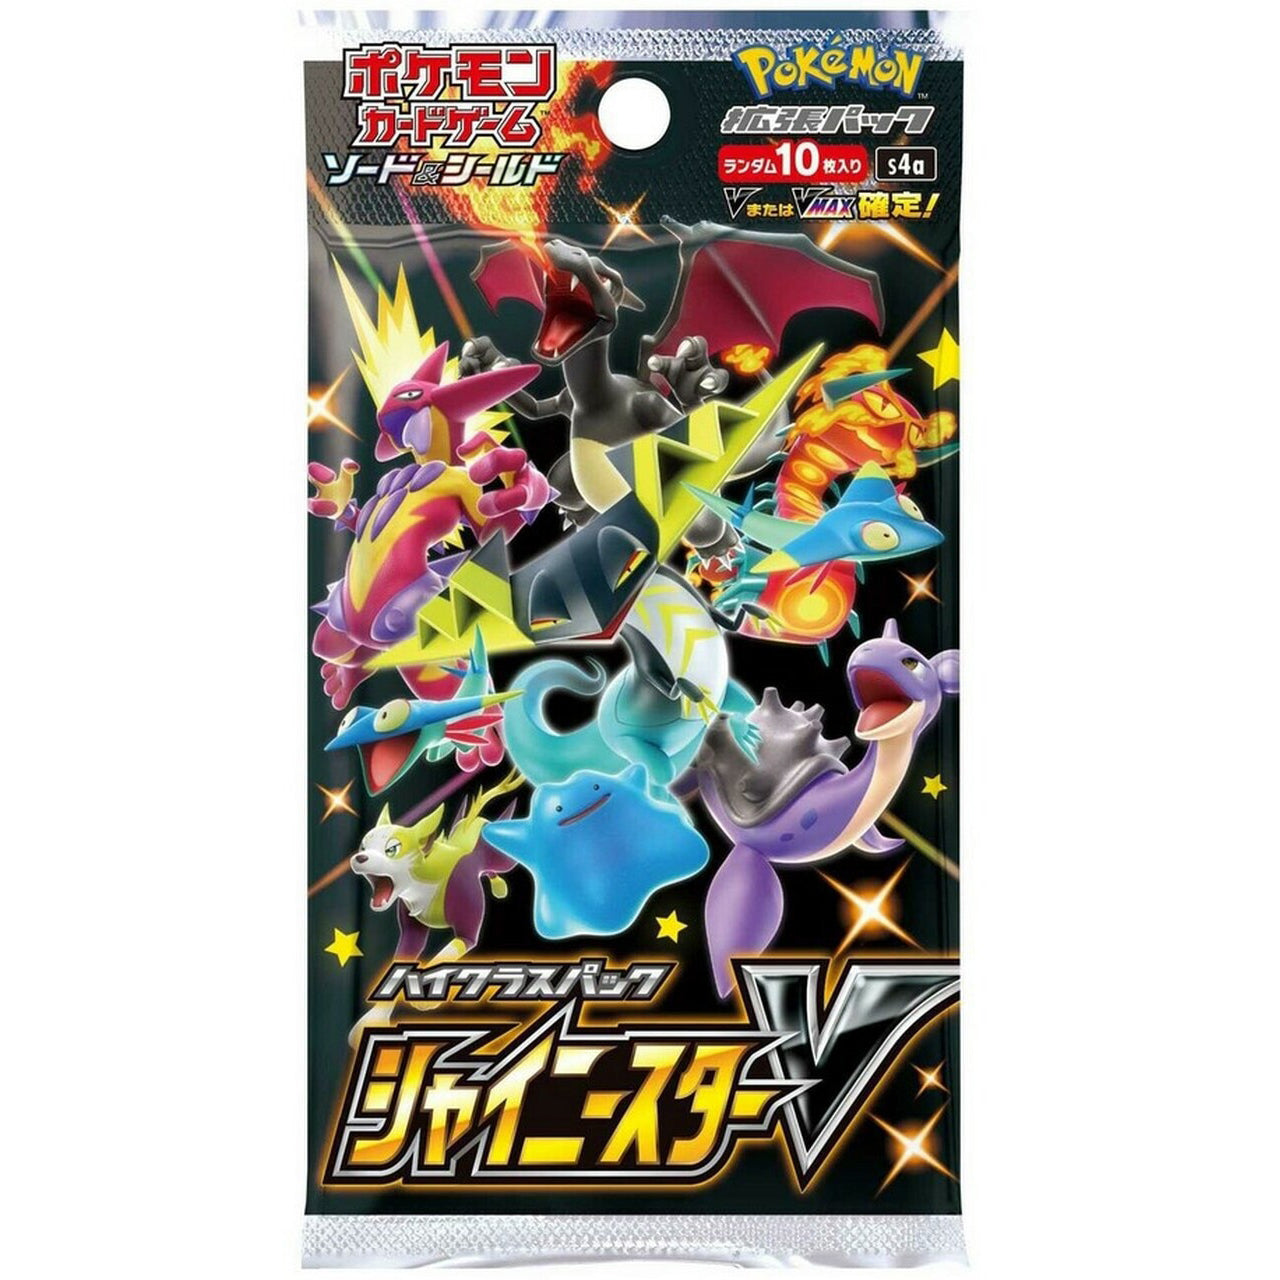 Japanese Pokemon Shiny Star V Booster Pack